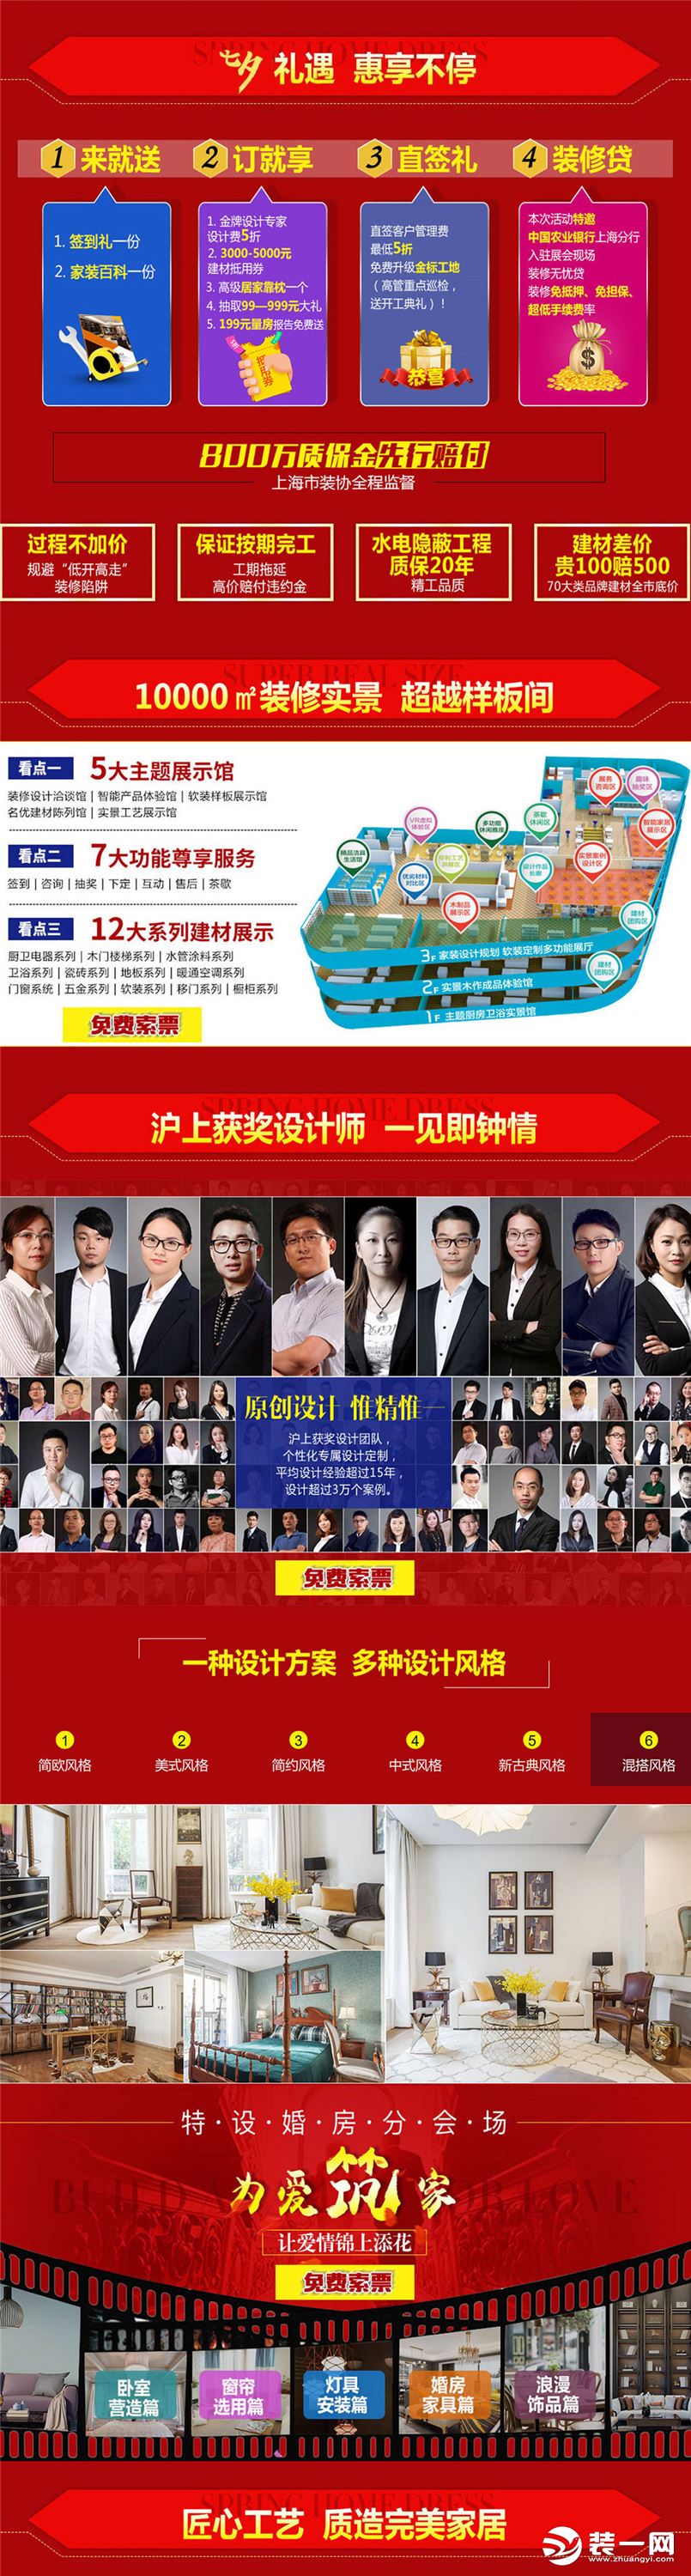 2018上海家装博览会